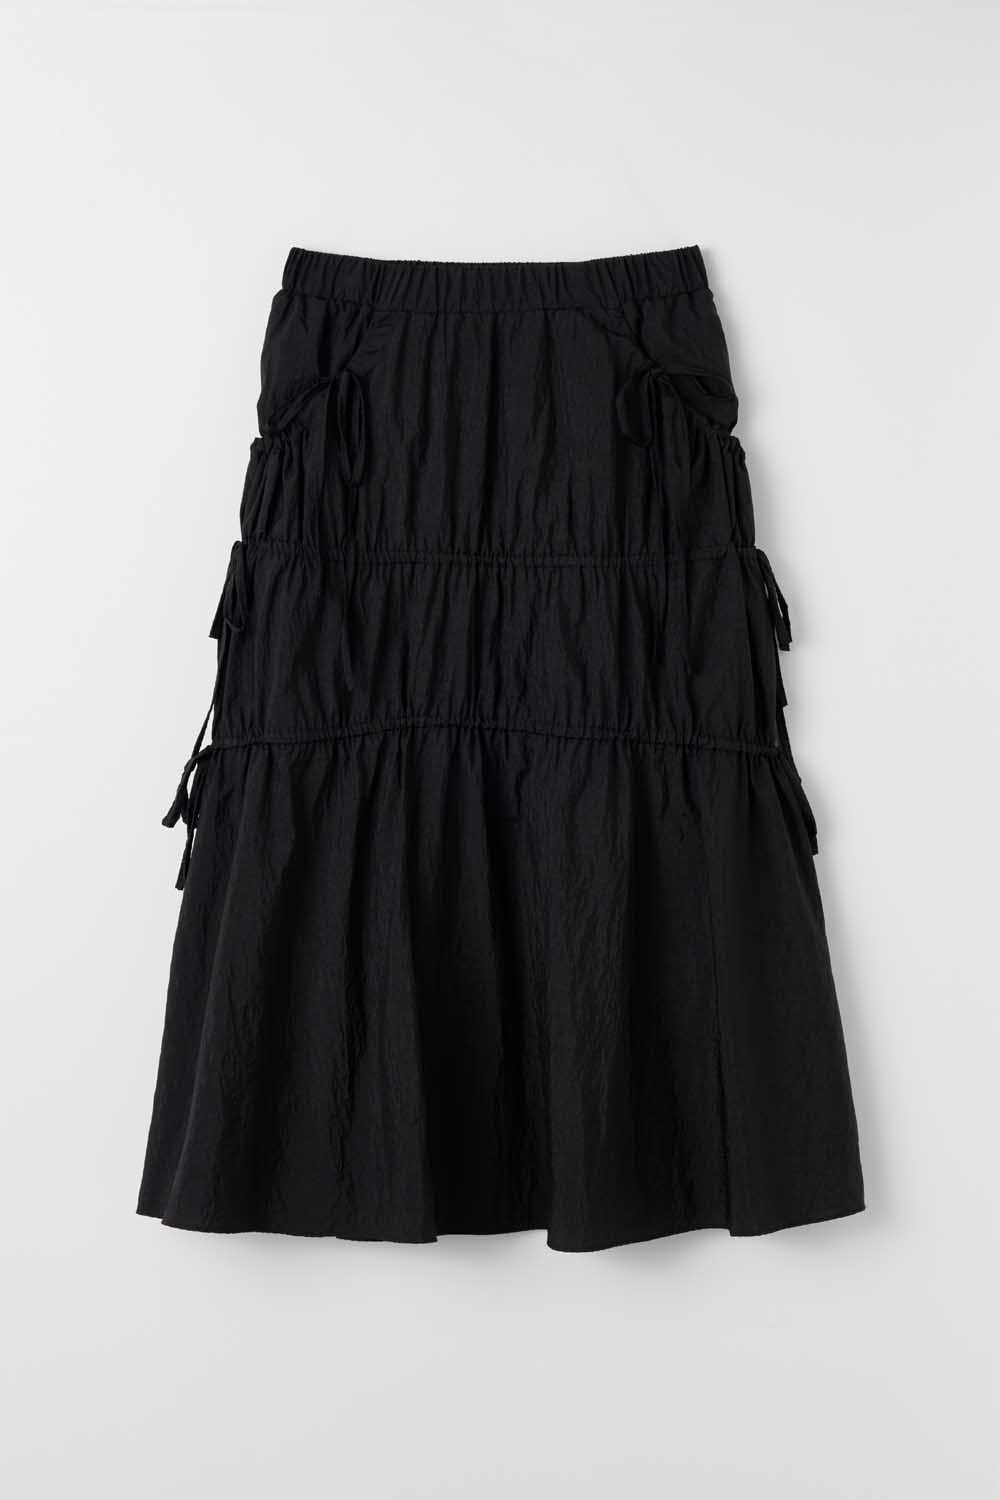 S Shirring Detail Skirt_Black